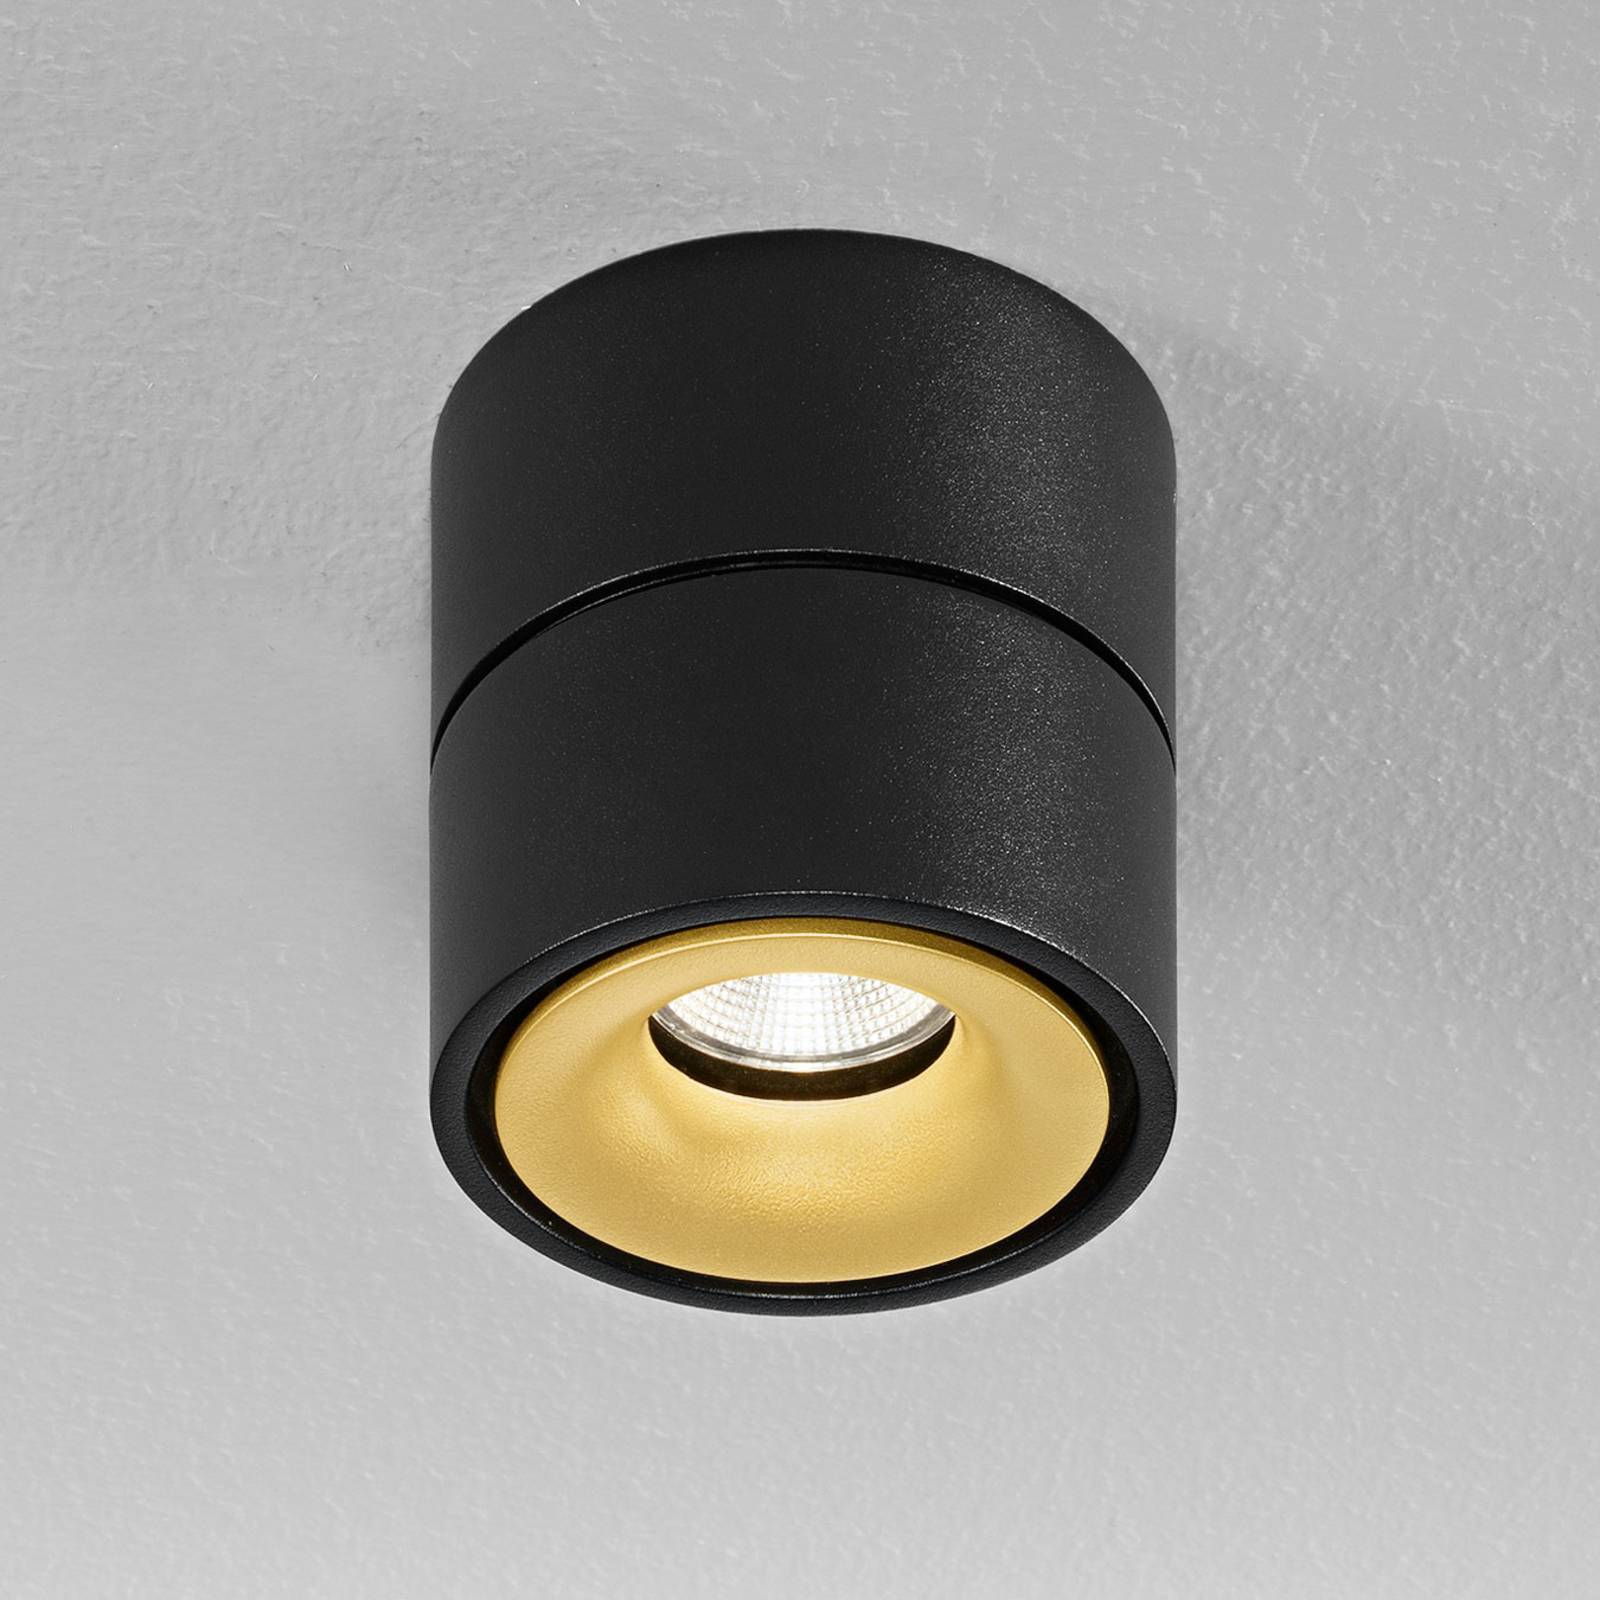 Image of Egger Licht Egger Clippo spot plafond LED, noir-doré, 3 000 K 